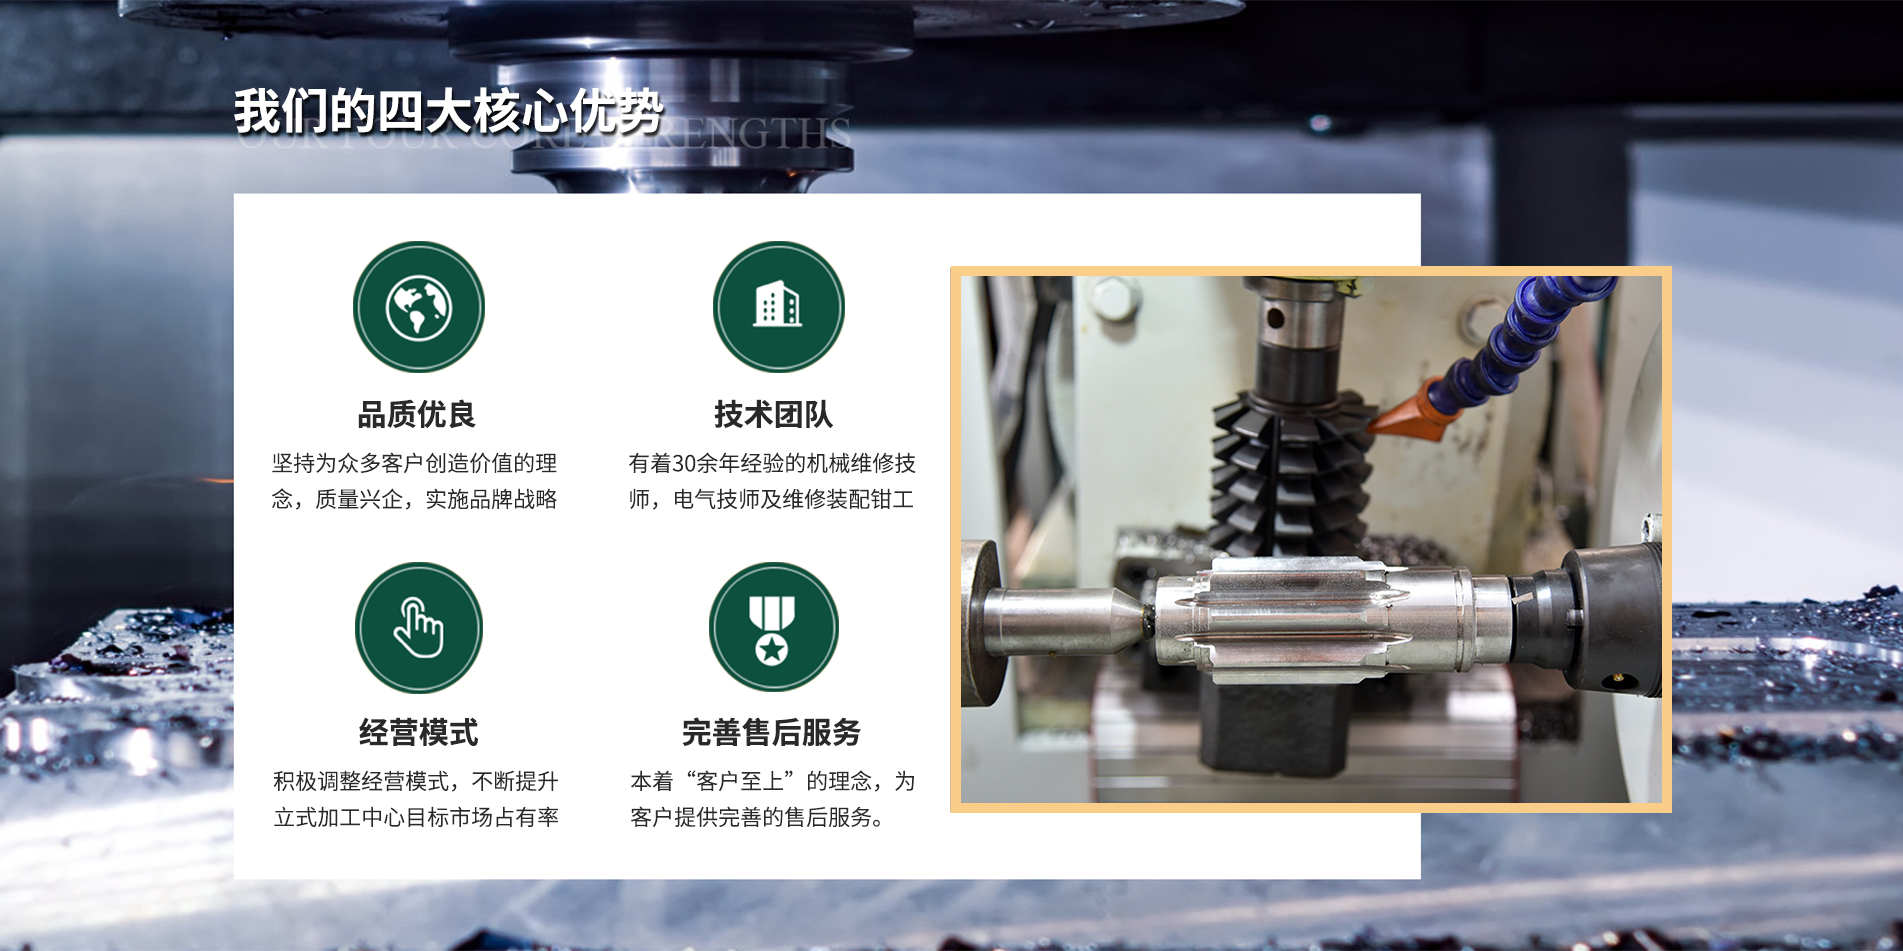 青州市工源数控机械维修厂的四大核心优势